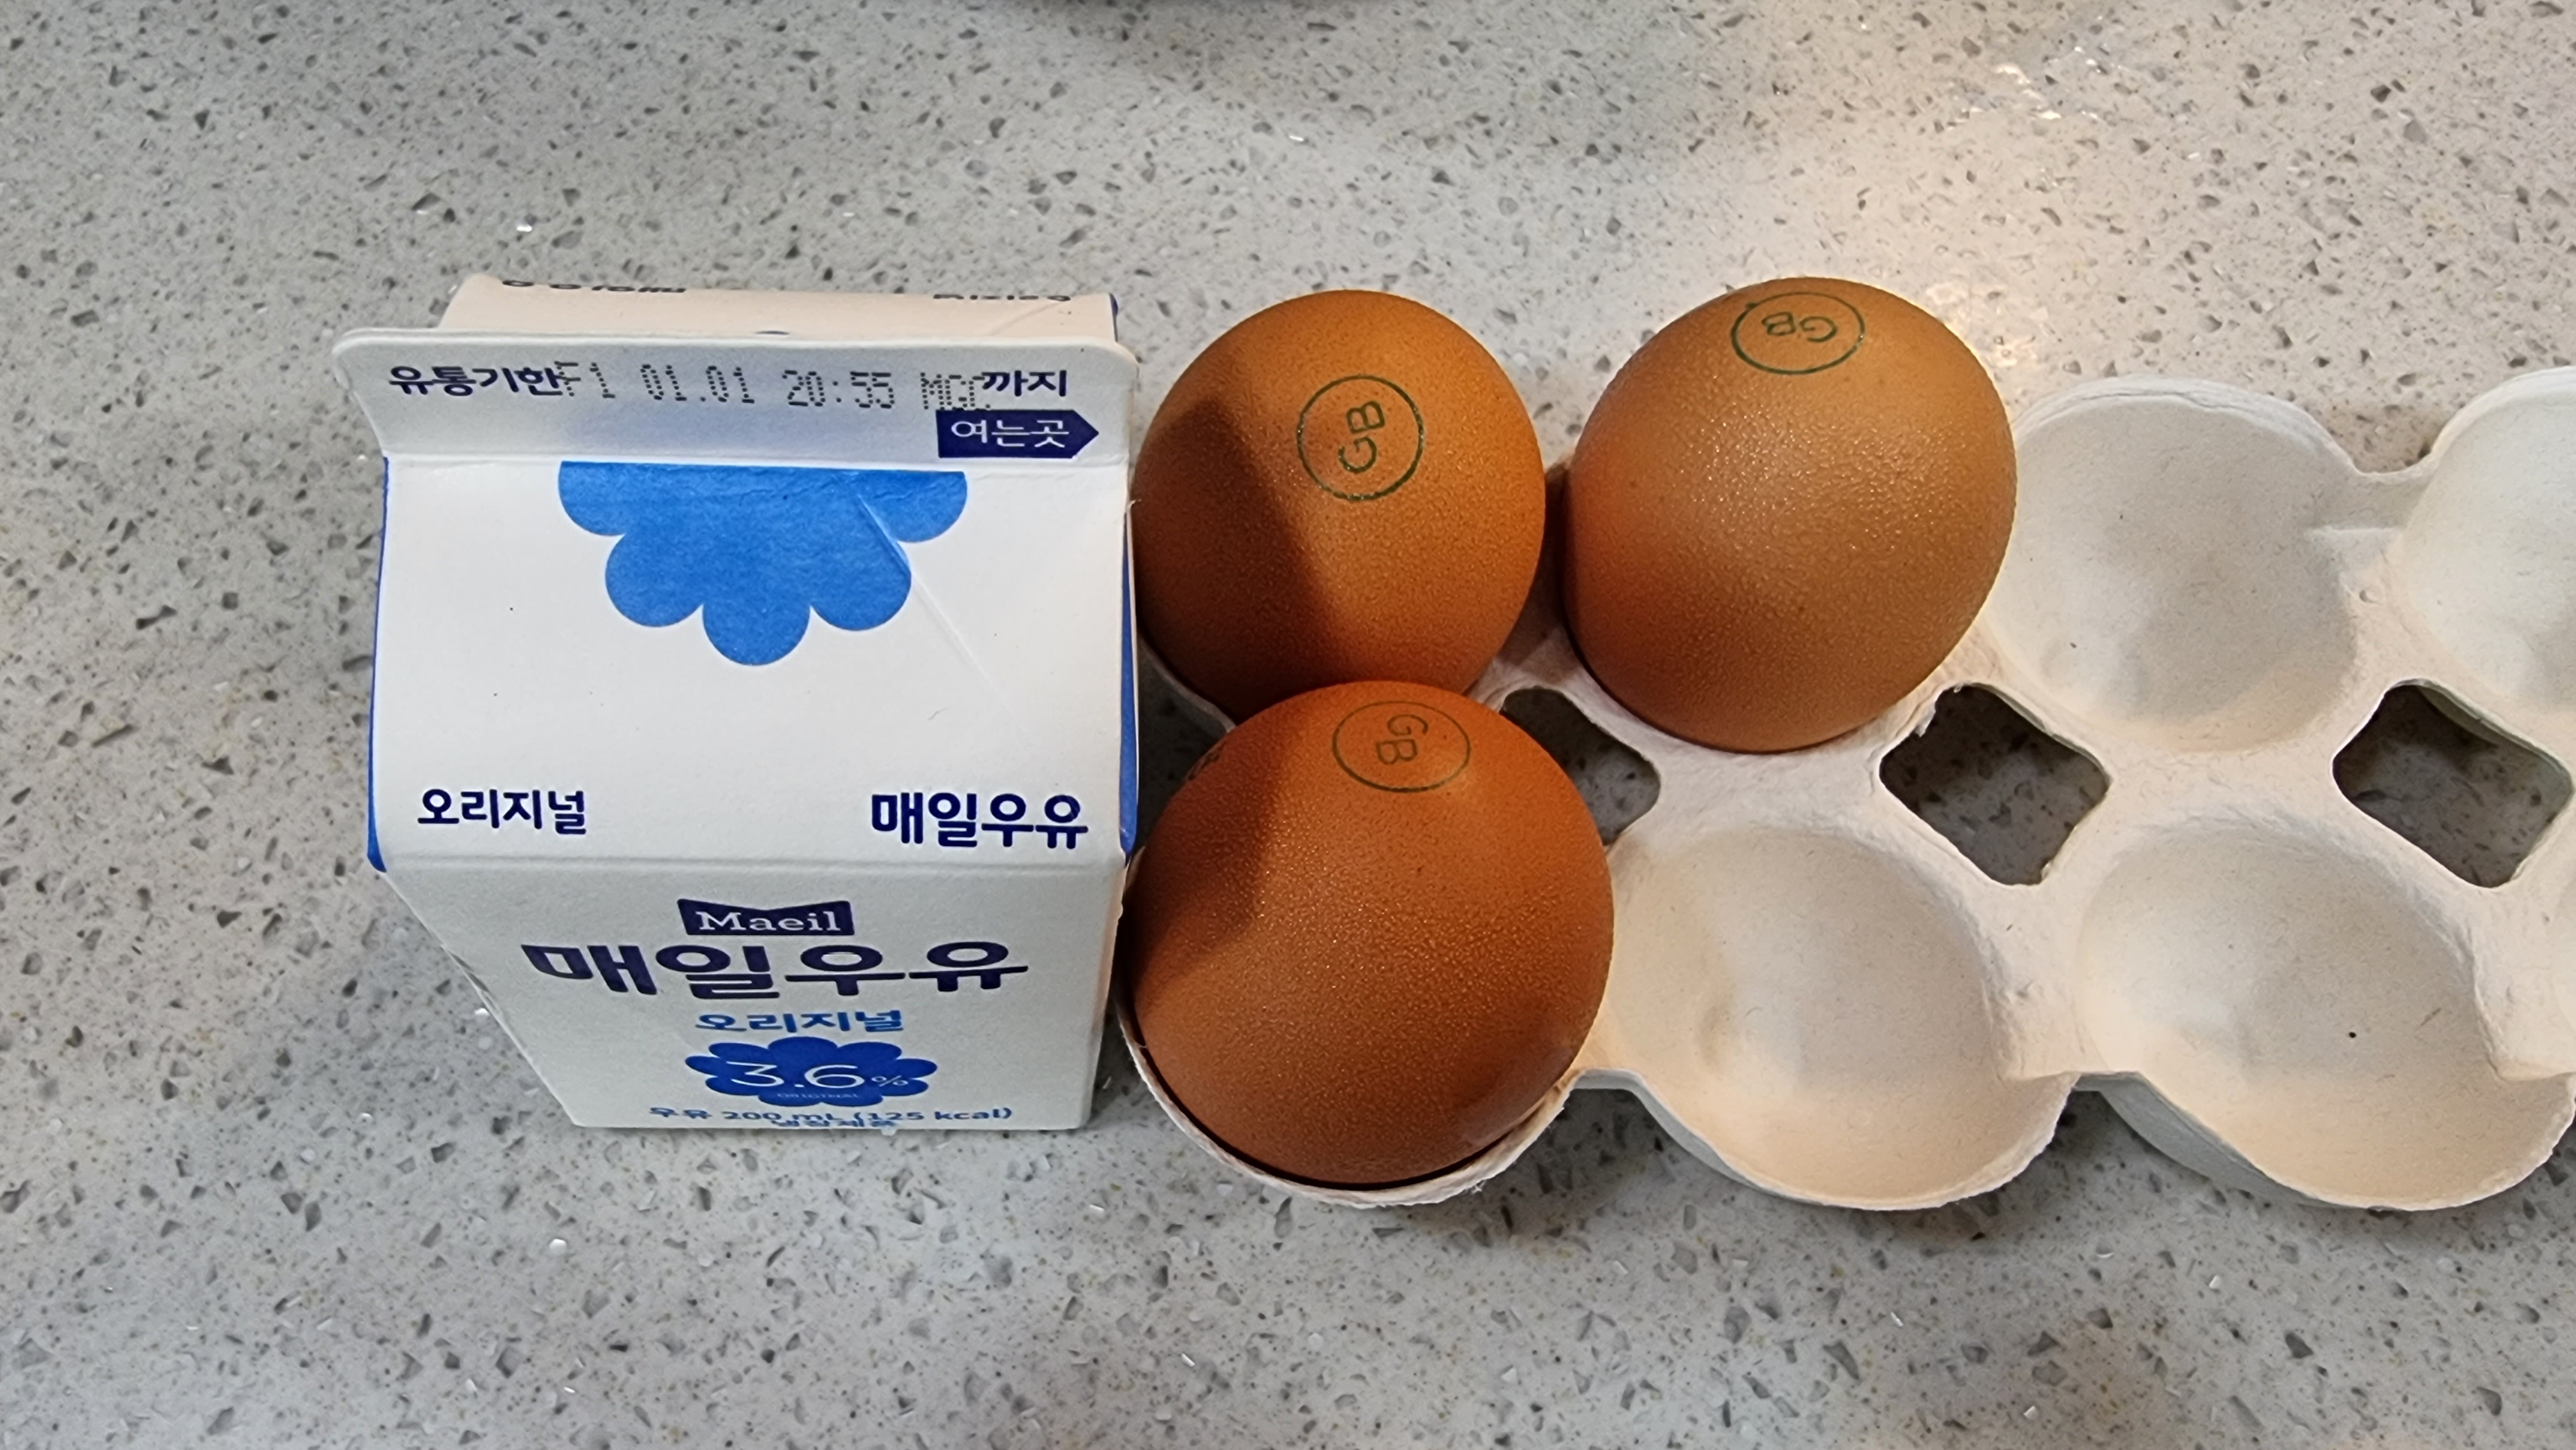 [집밥] 전자렌지로 초간단 우유 계란찜 만들기